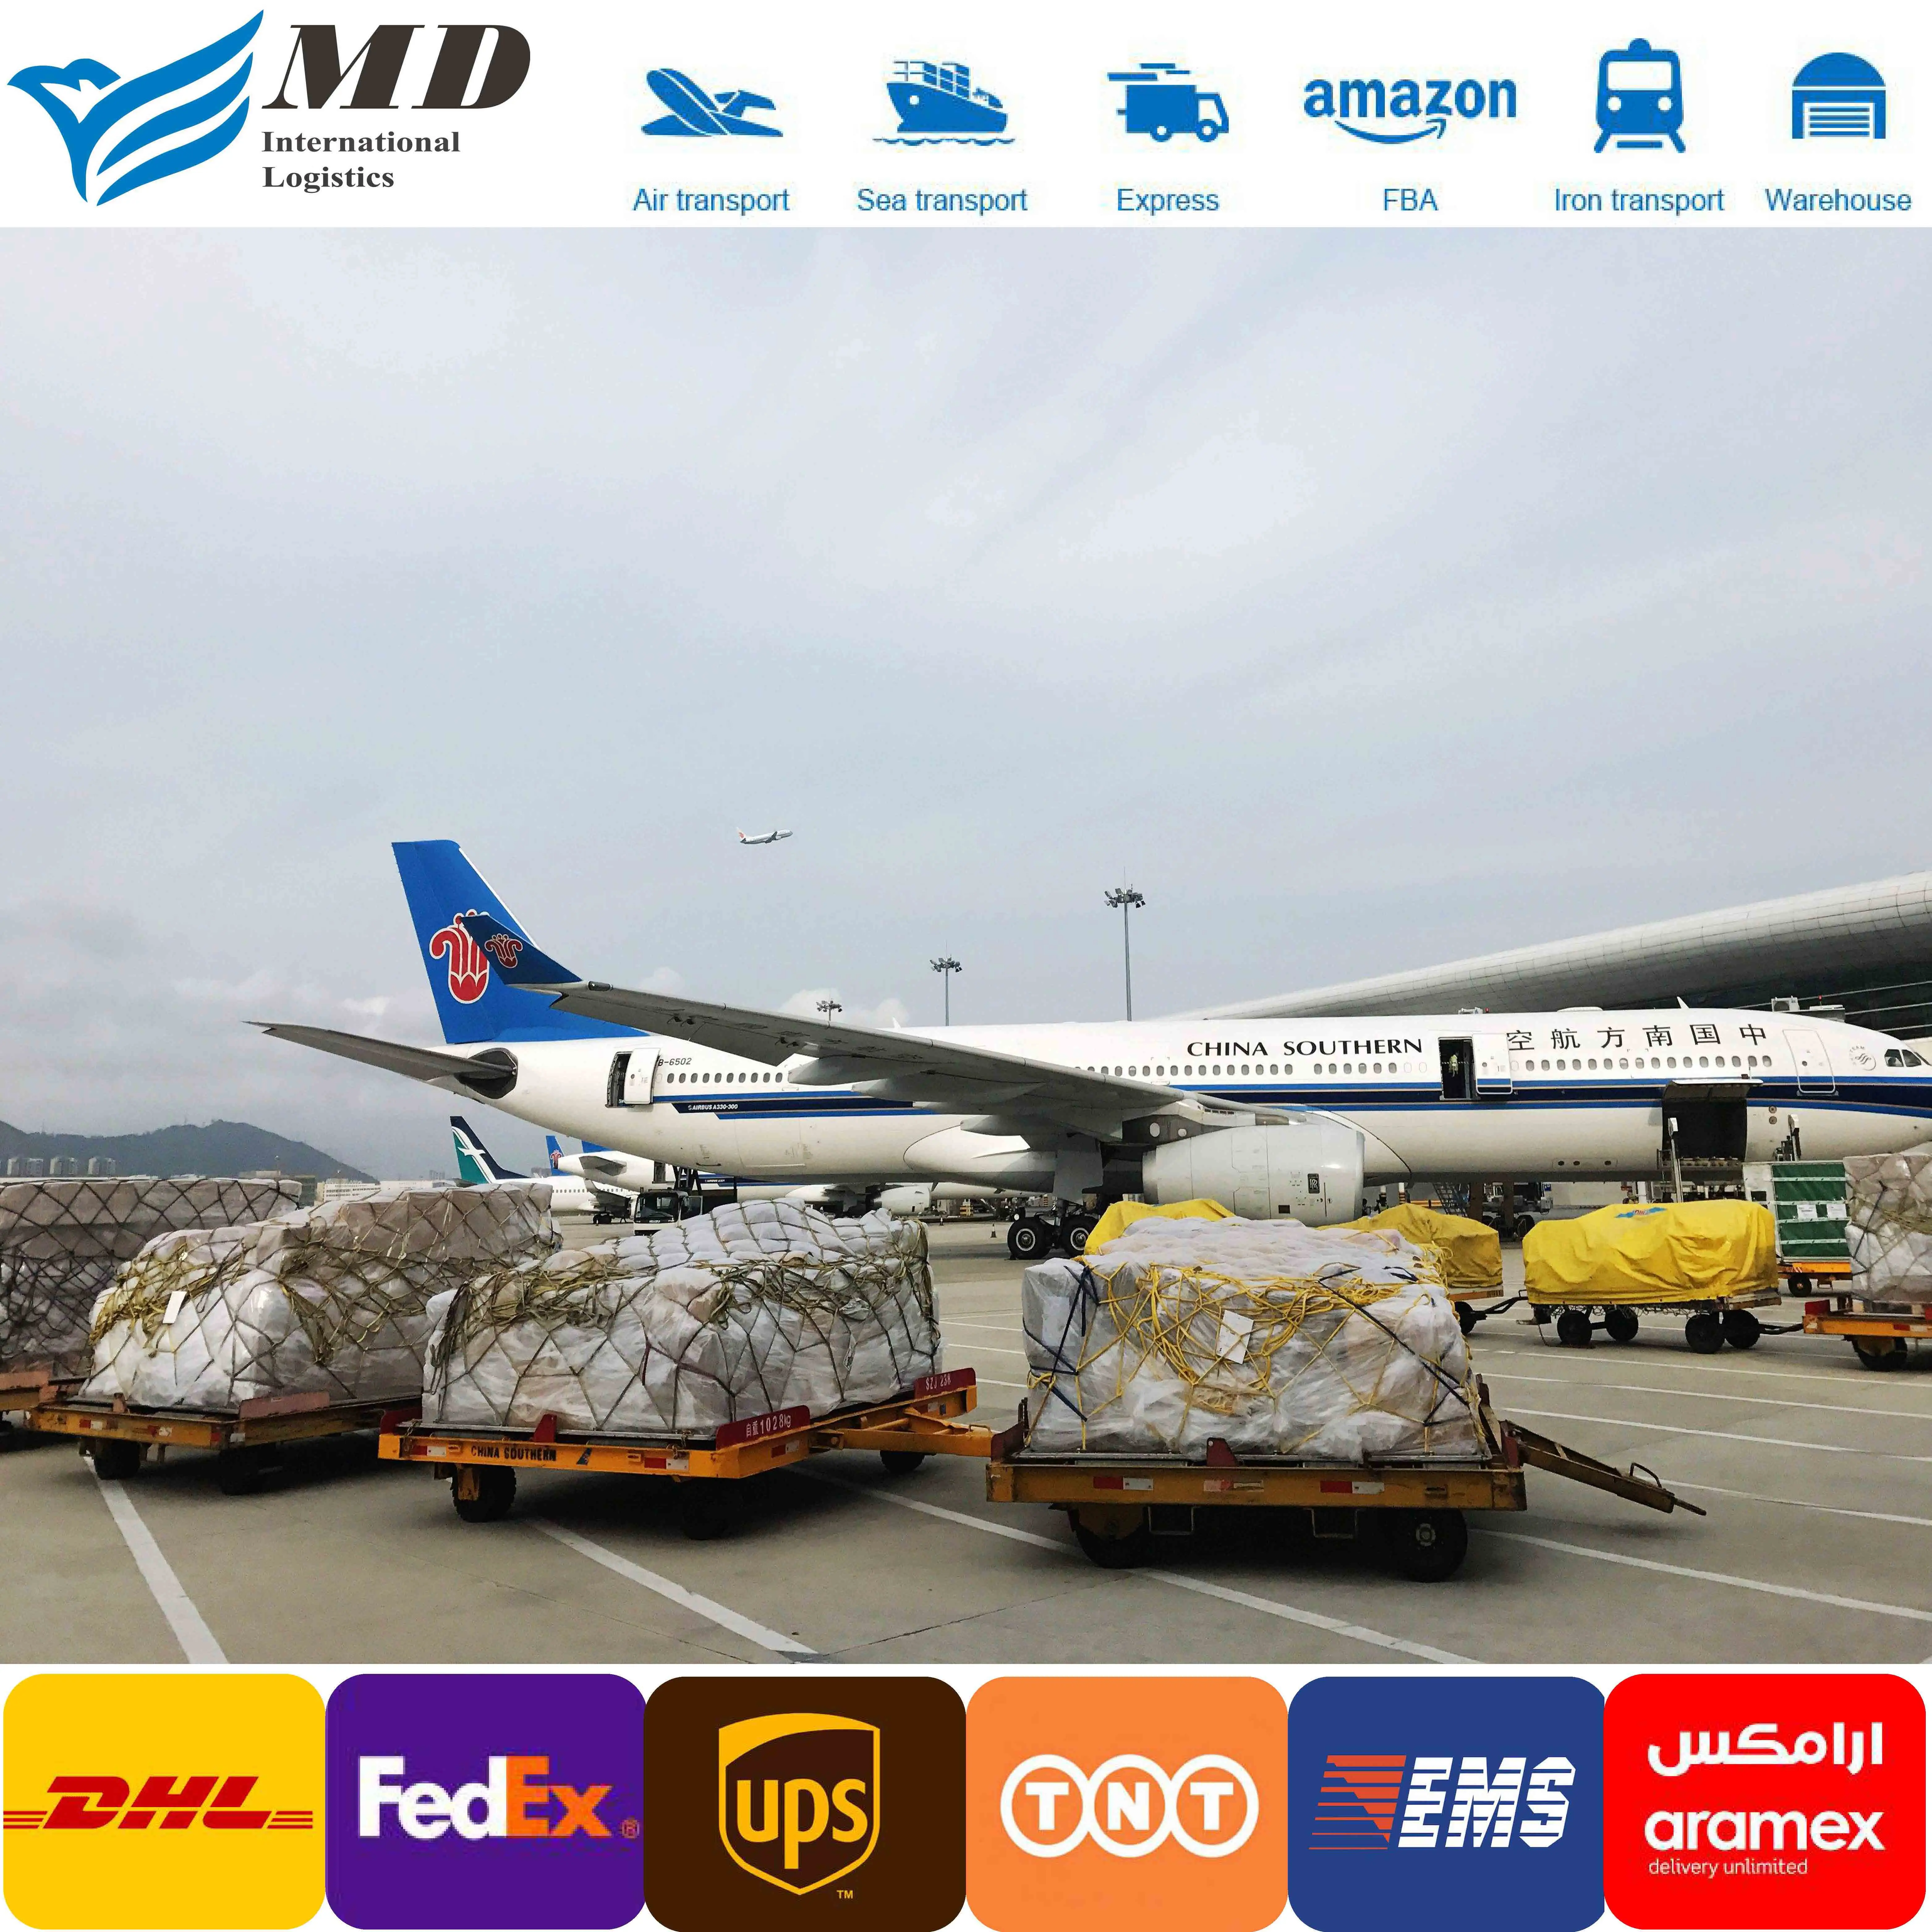 Amazon Fba Cargo porta a porta consegna spese di trasporto dalla cina all'india/slovacchia/messico Dropshipping